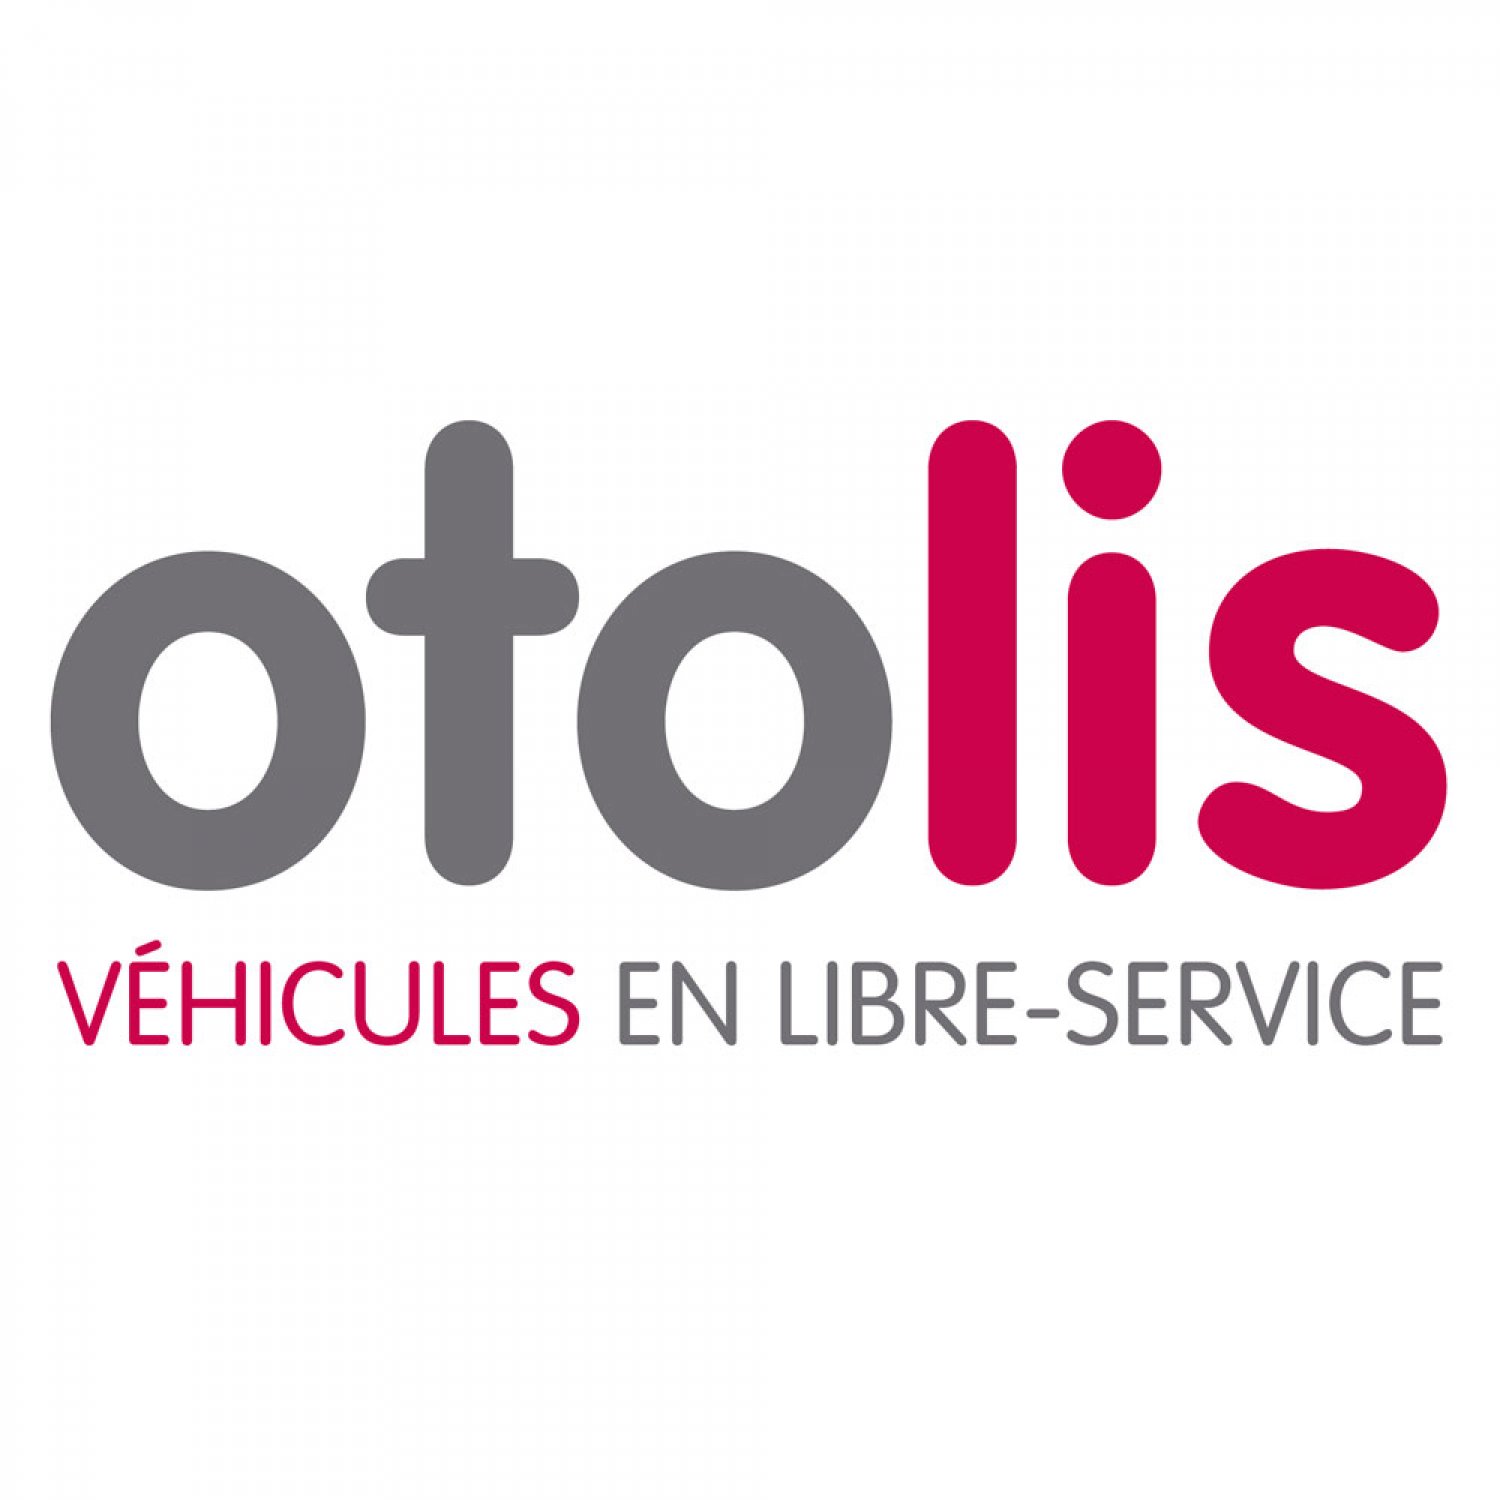 Otolis - Autopartage par Vitalis Poitiers